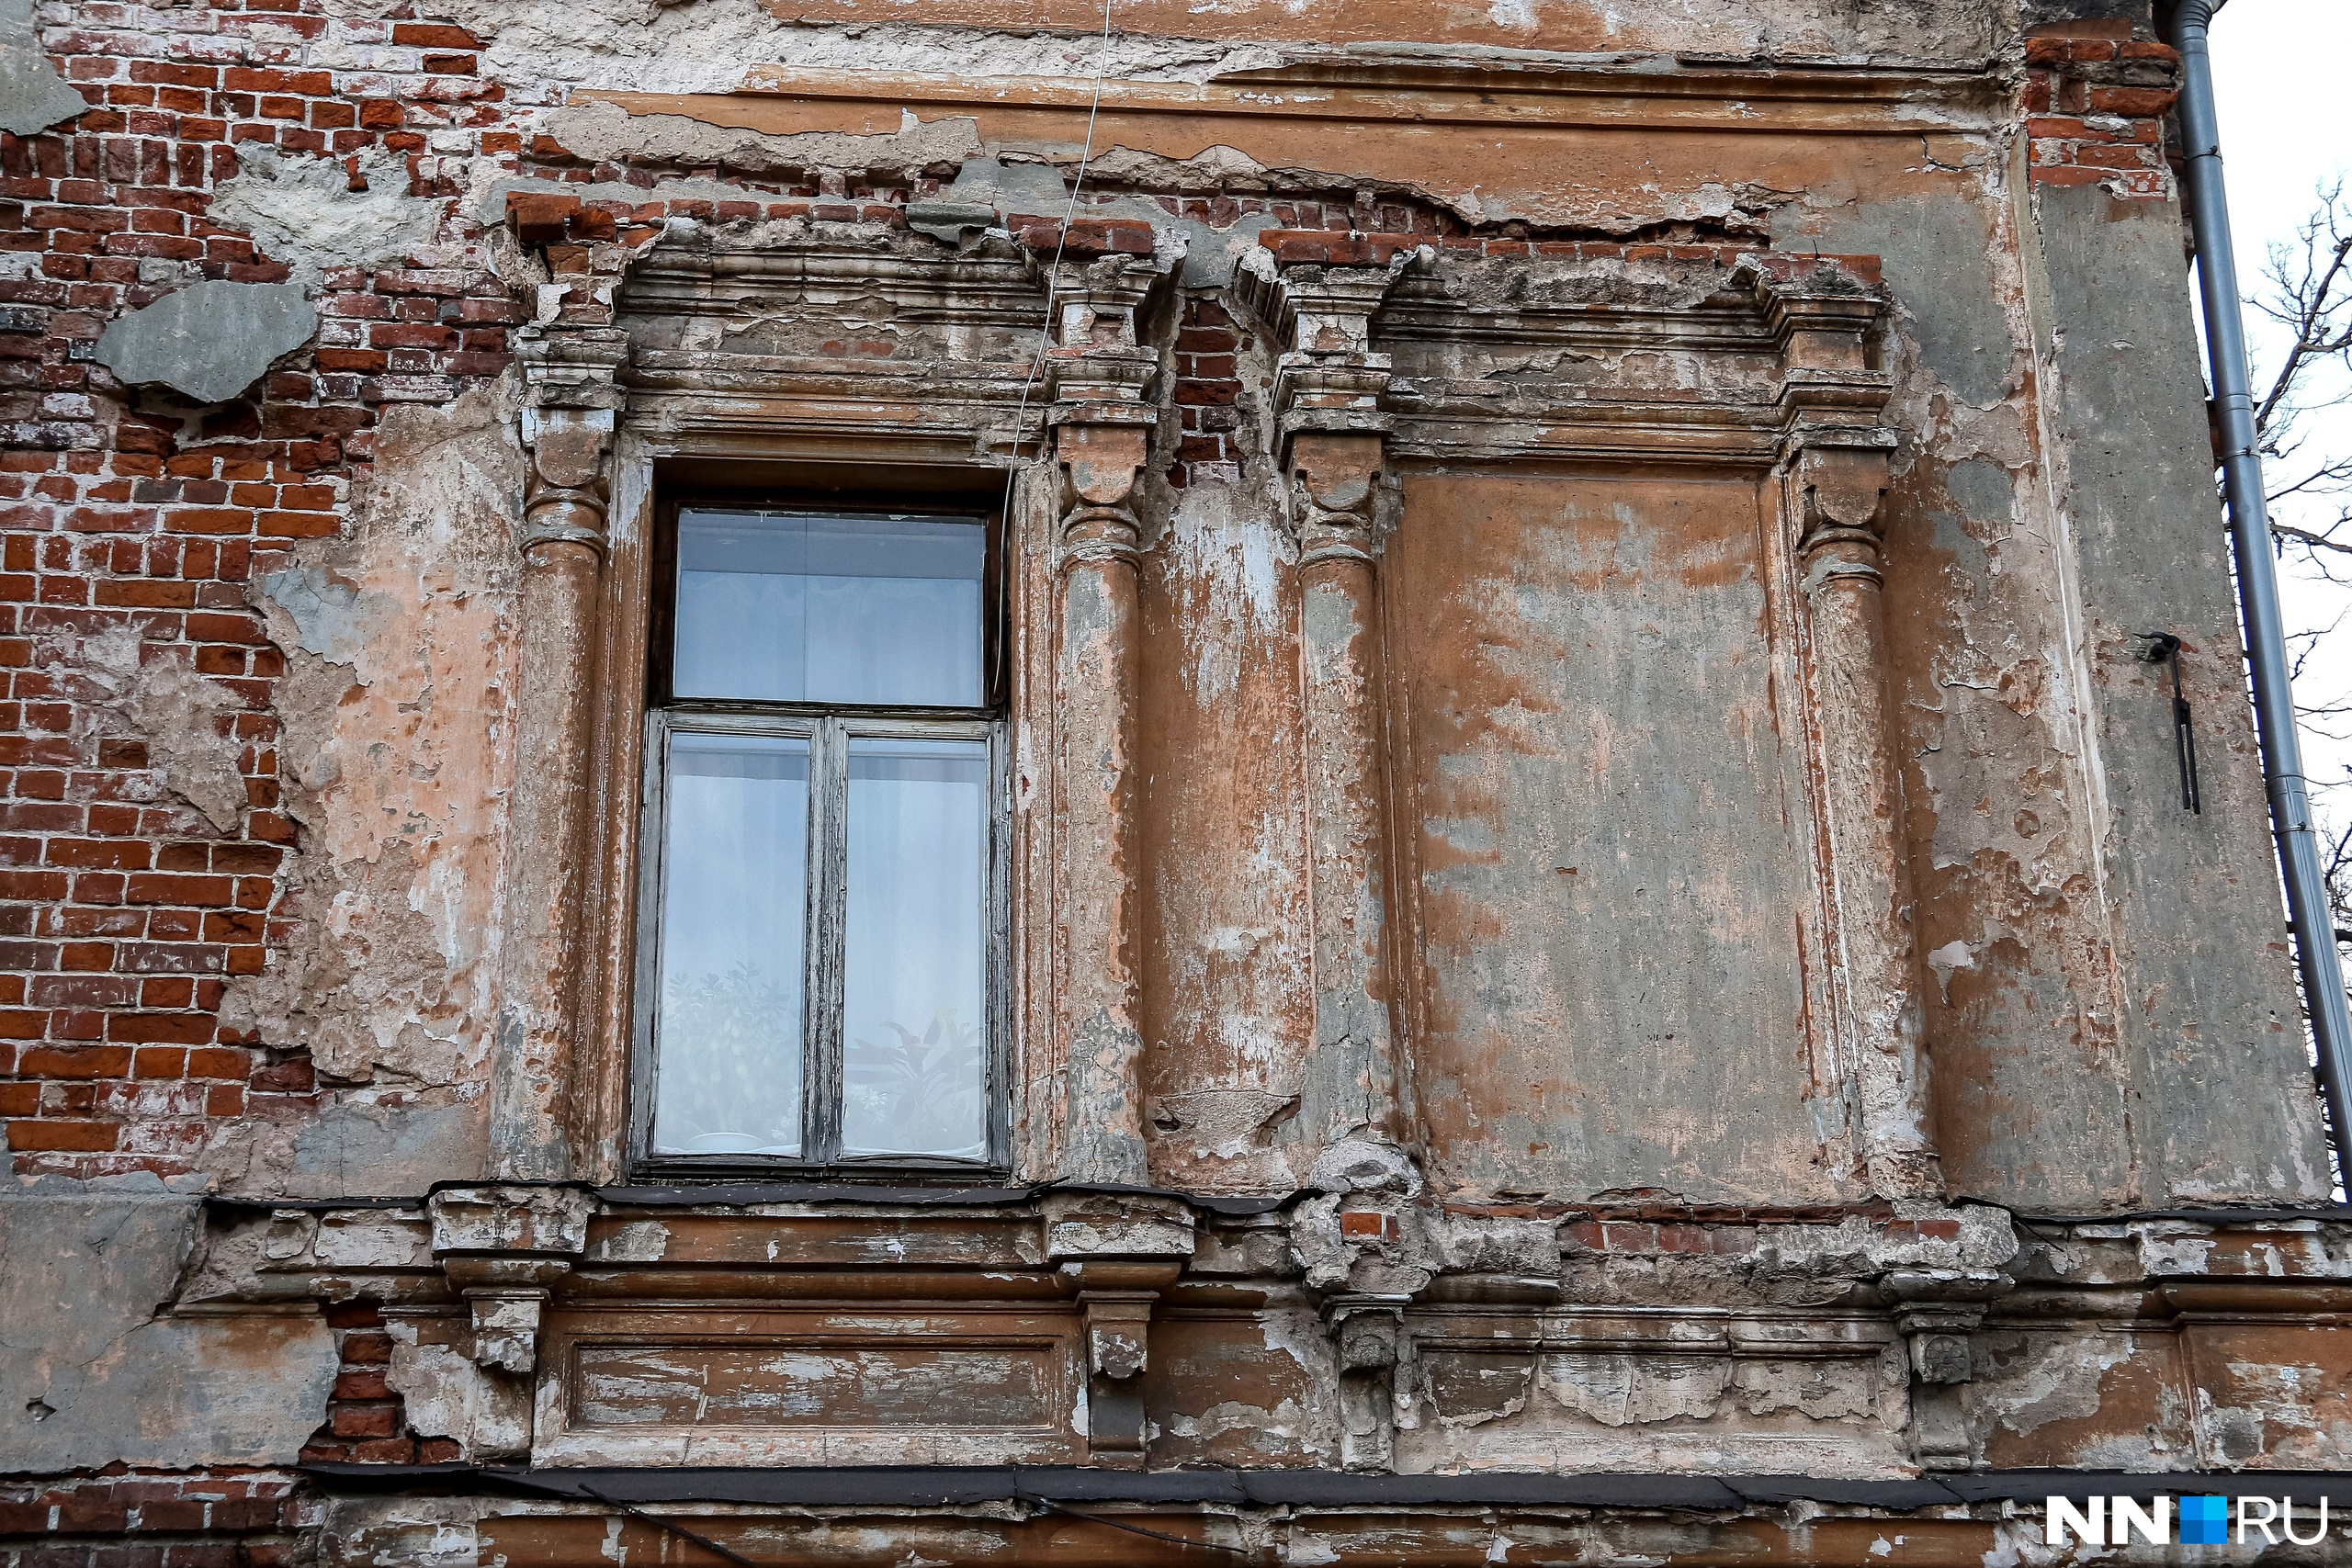 На некоторых окнах еще сохранились остатки старинной лепнины, но большая часть декора уже осыпалась вниз